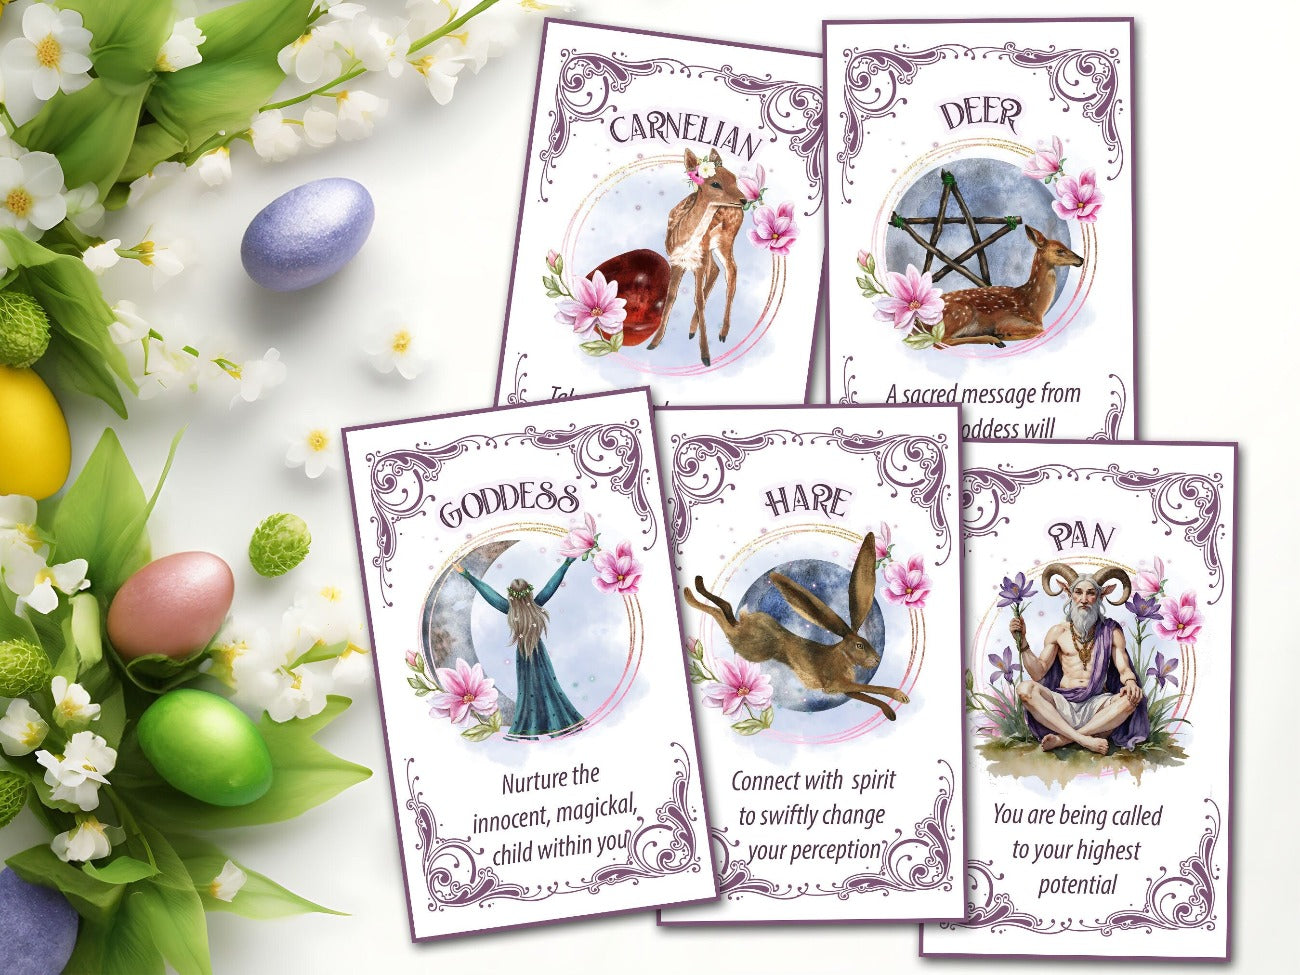 OSTARA ORACLE CARDS, Printable Tarot Messages, Carnelian, Deer, Goddess, Hare, and Pan cards - Morgana Magick Spell